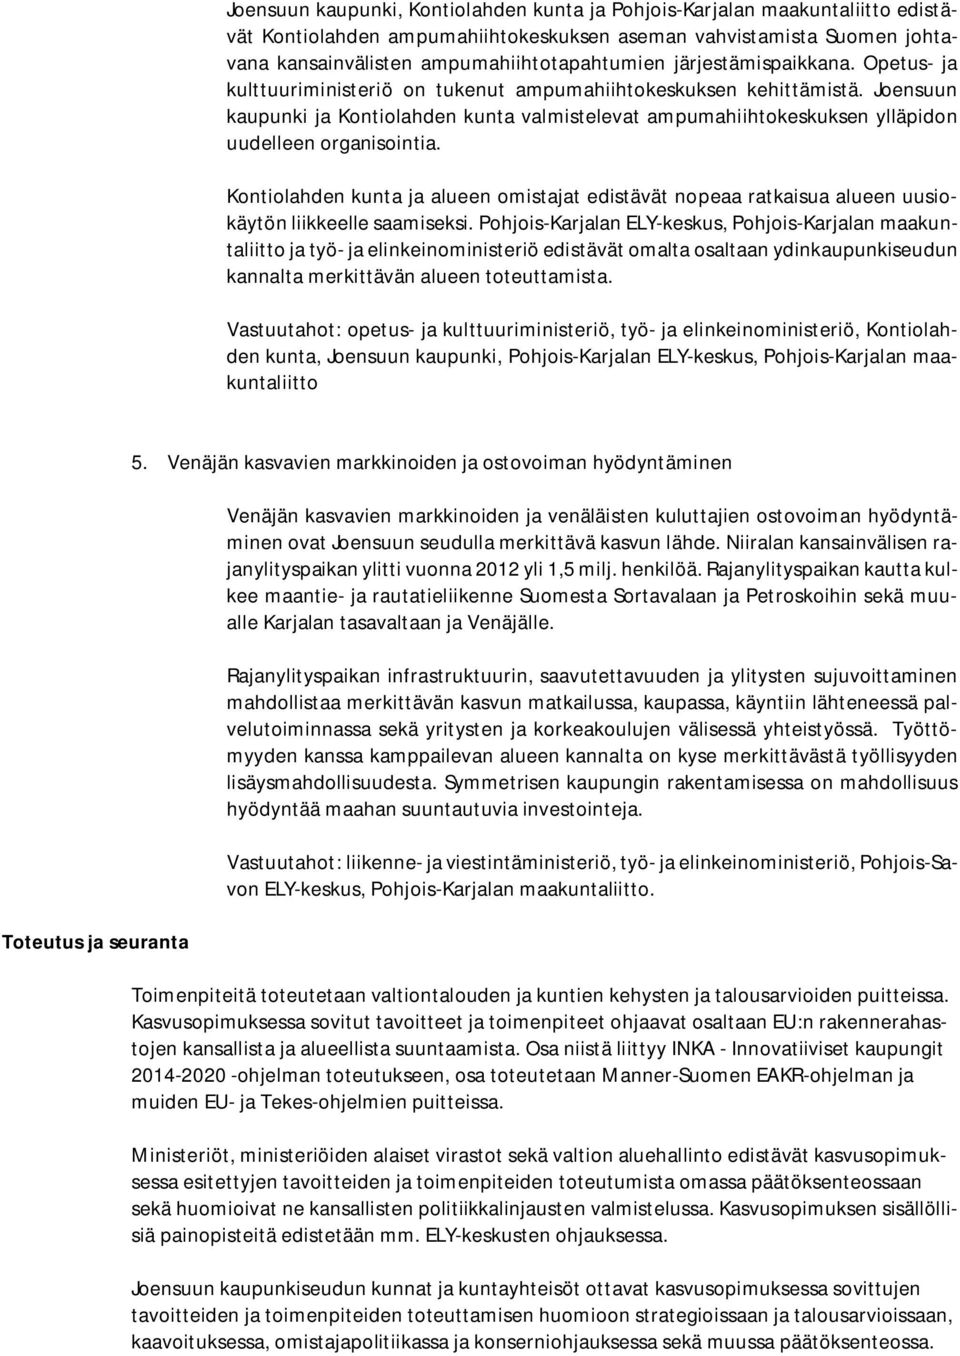 Joensuun kaupunki ja Kontiolahden kunta valmistelevat ampumahiihtokeskuksen ylläpidon uudelleen organisointia.